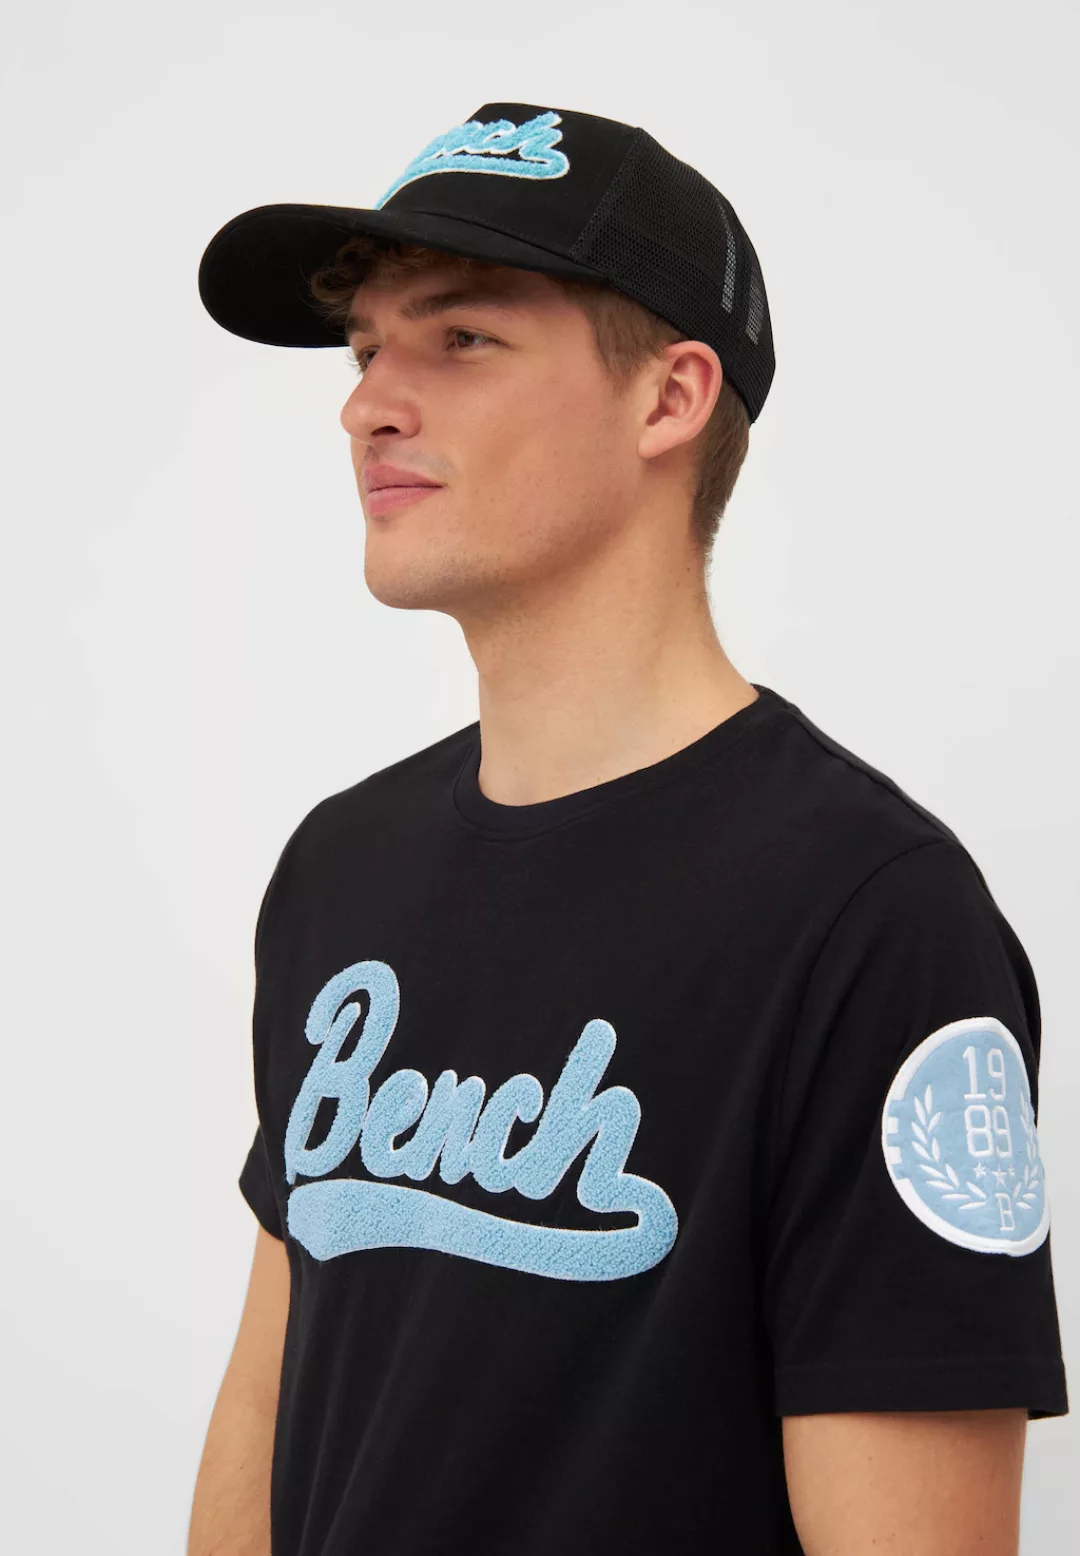 Bench. Baseball Cap "VARNY" günstig online kaufen